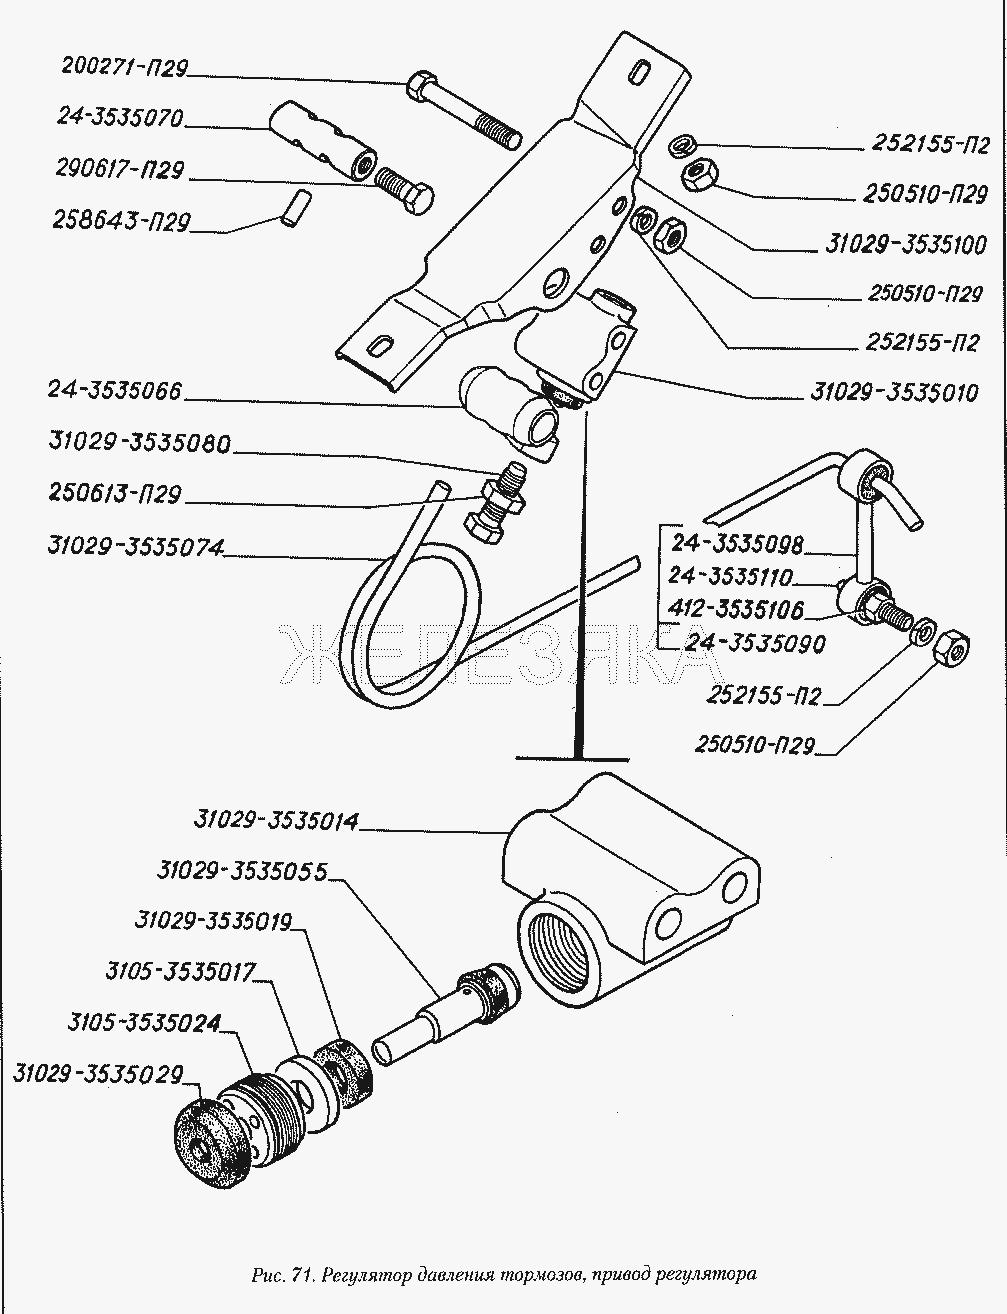 Регулятор давления тормозов, привод регулятора.  ГАЗ-3110